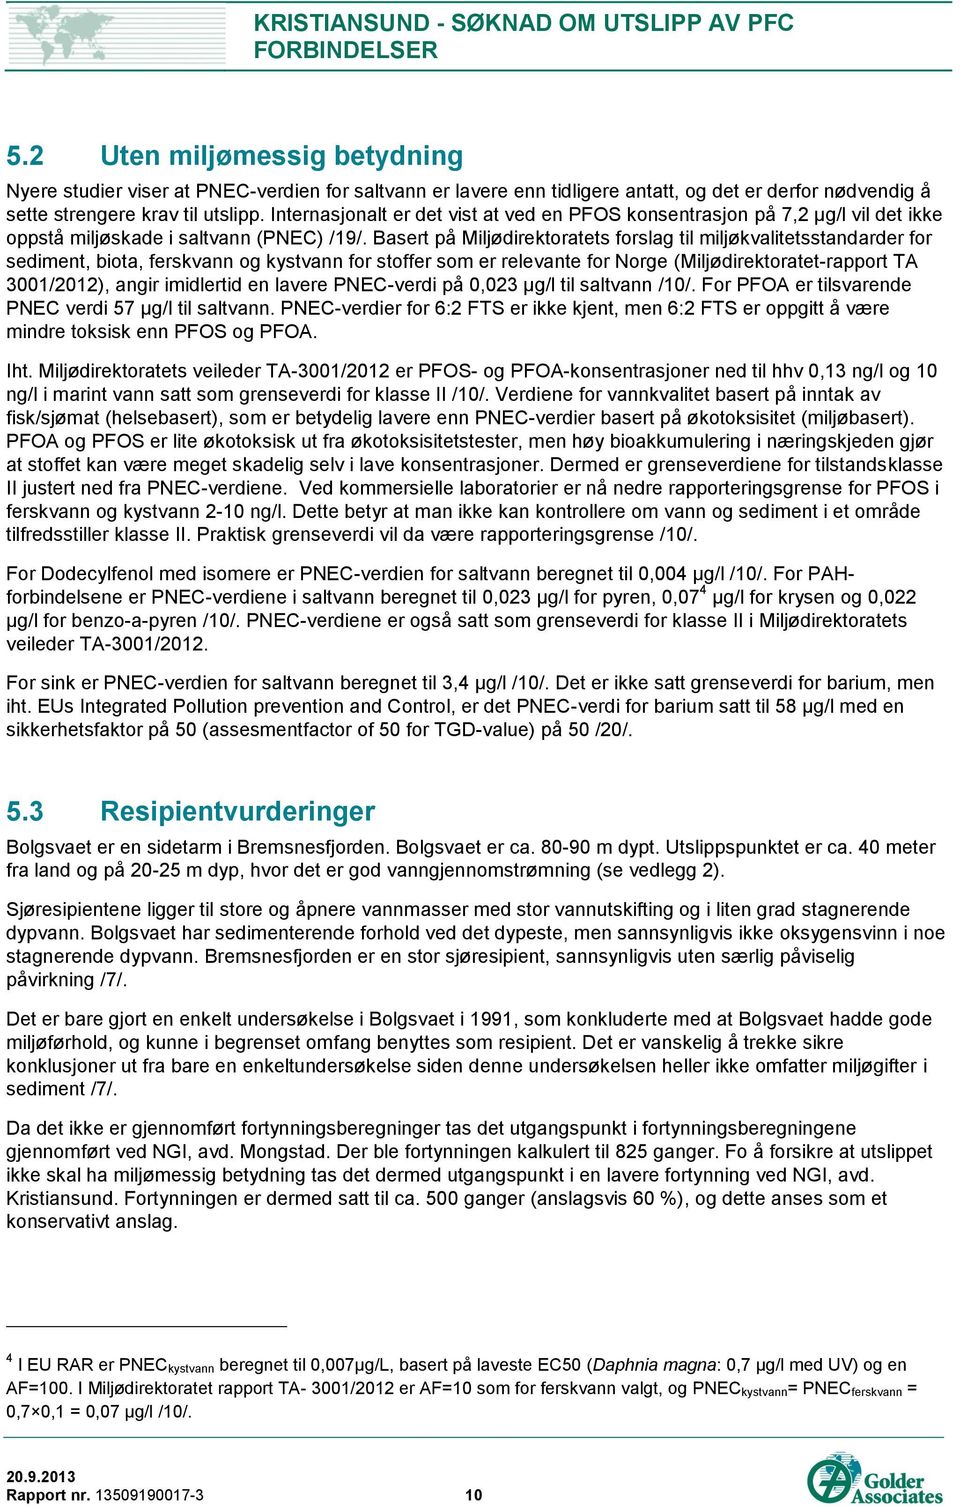 Basert på Miljødirektoratets forslag til miljøkvalitetsstandarder for sediment, biota, ferskvann og kystvann for stoffer som er relevante for Norge (Miljødirektoratet-rapport TA 3001/2012), angir